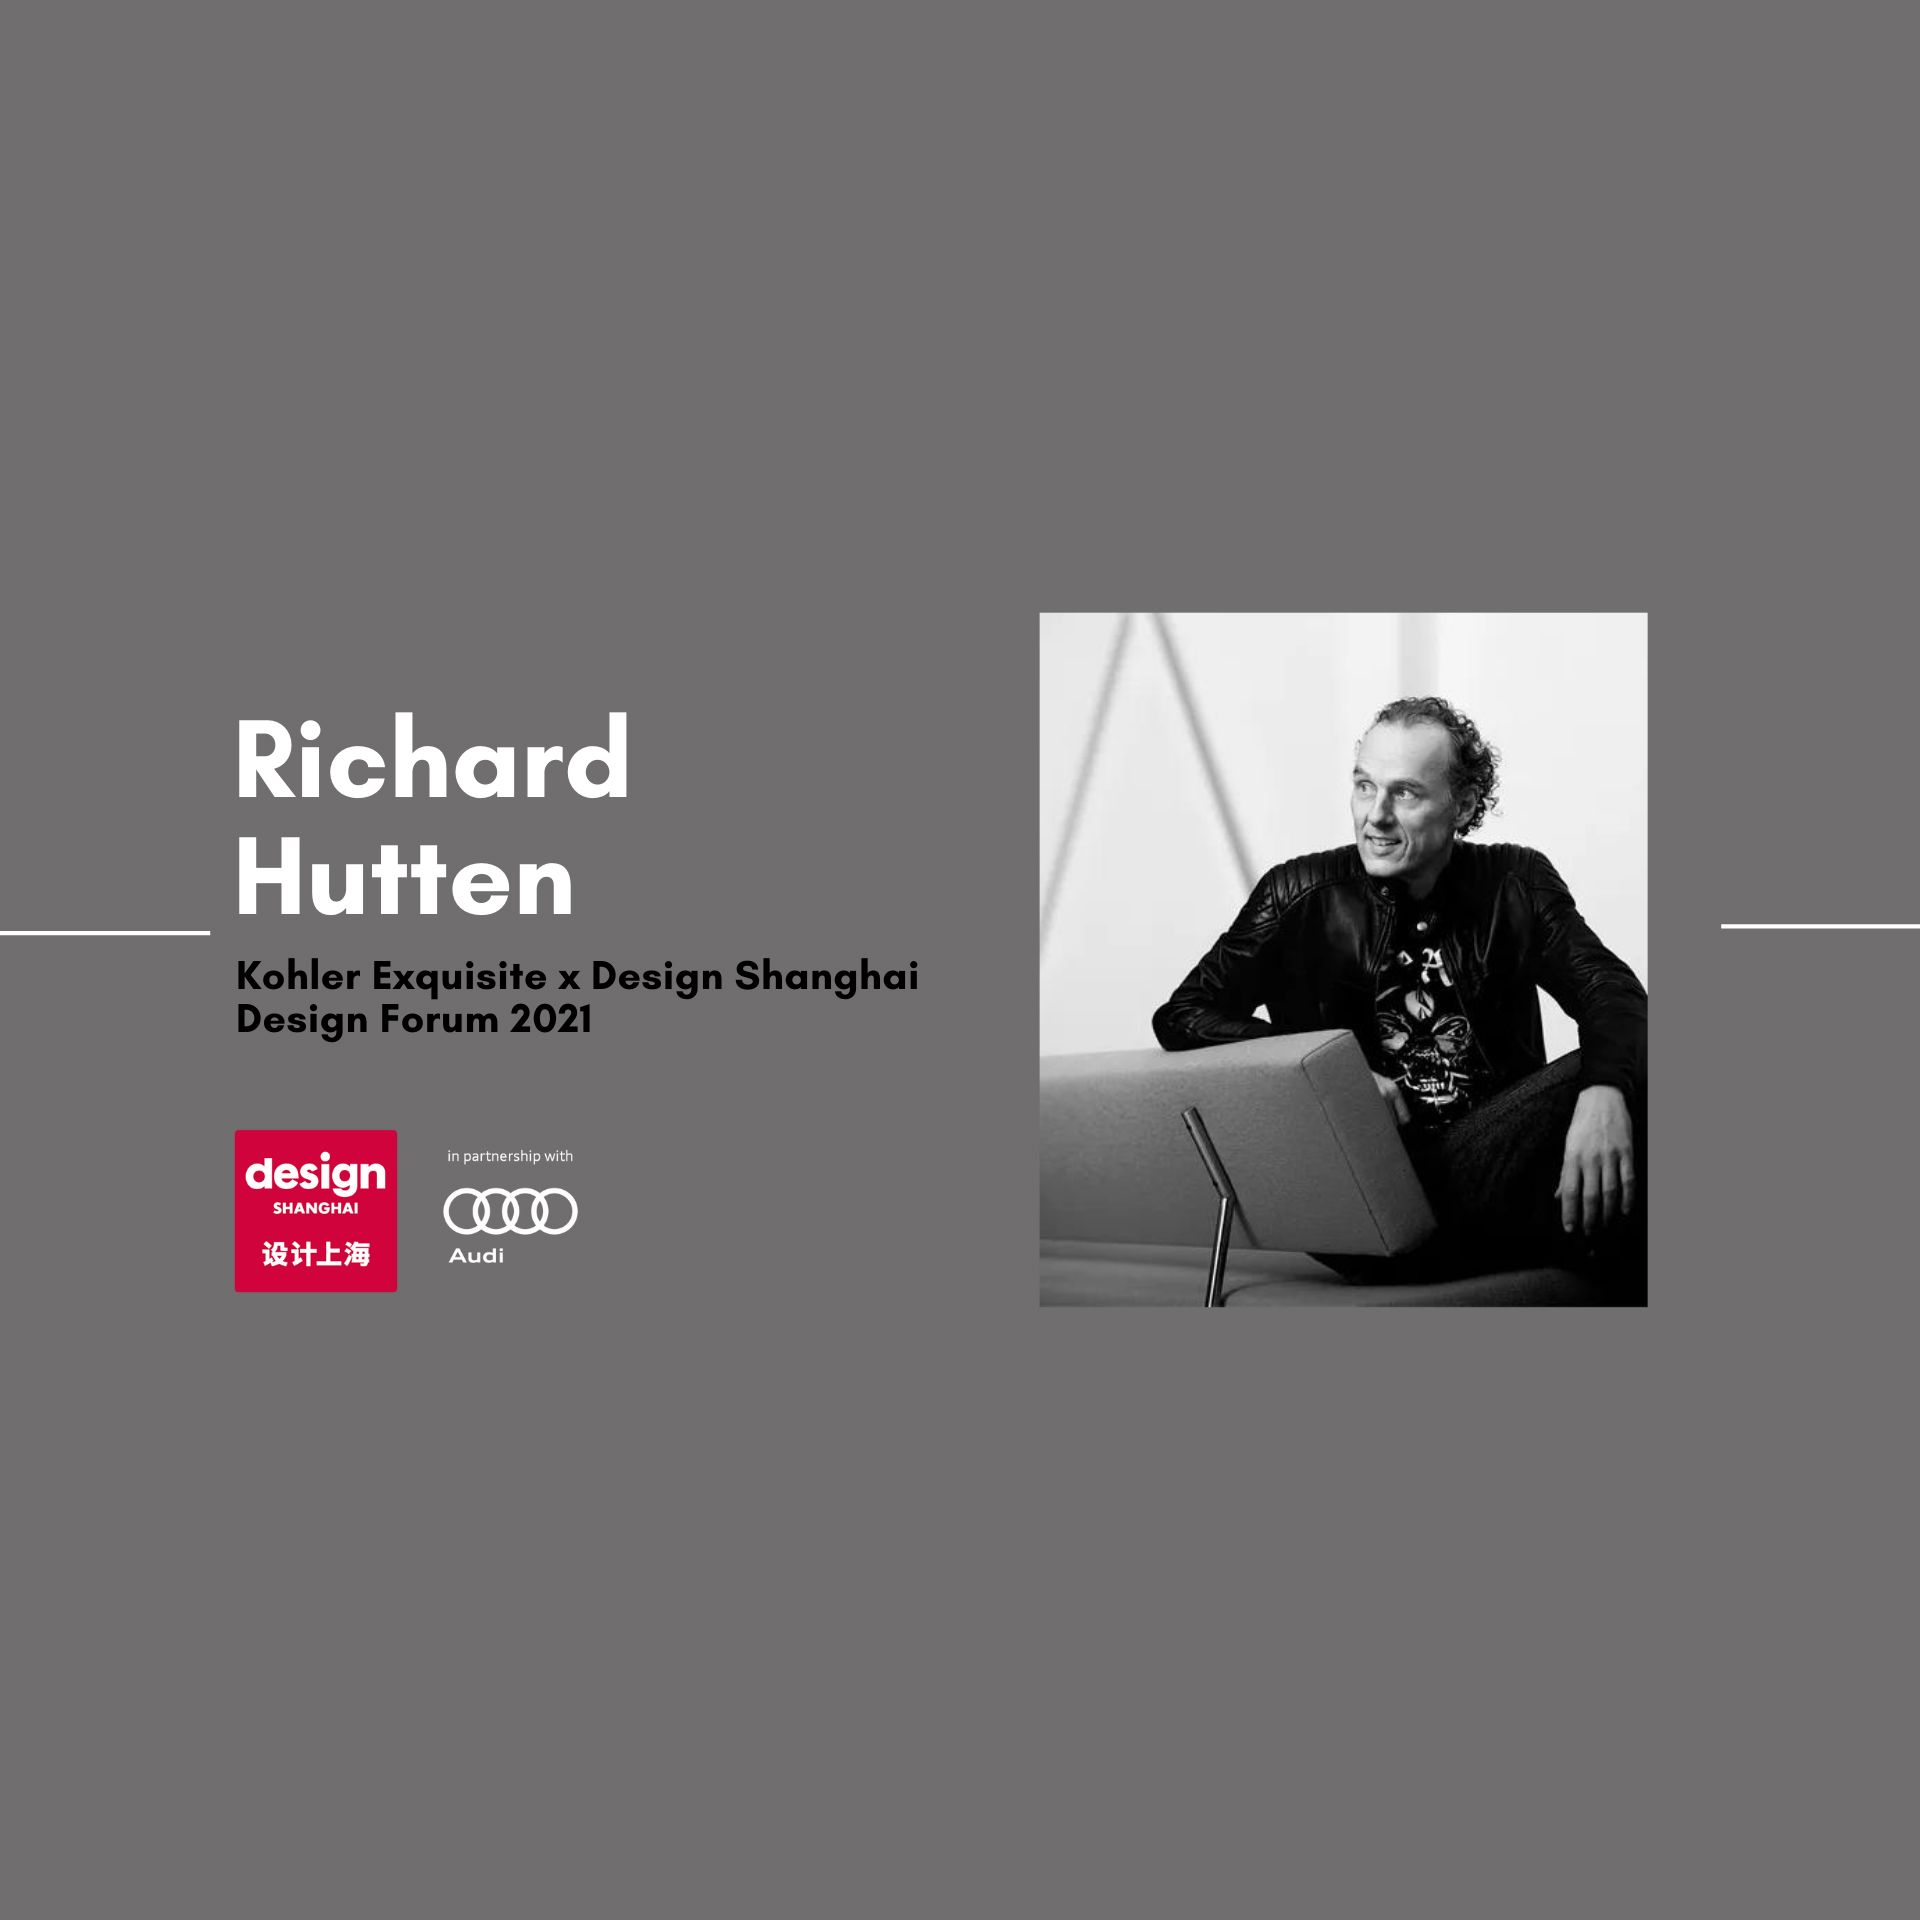 RICHARD HUTTEN: NO SIGN OF DESIGN